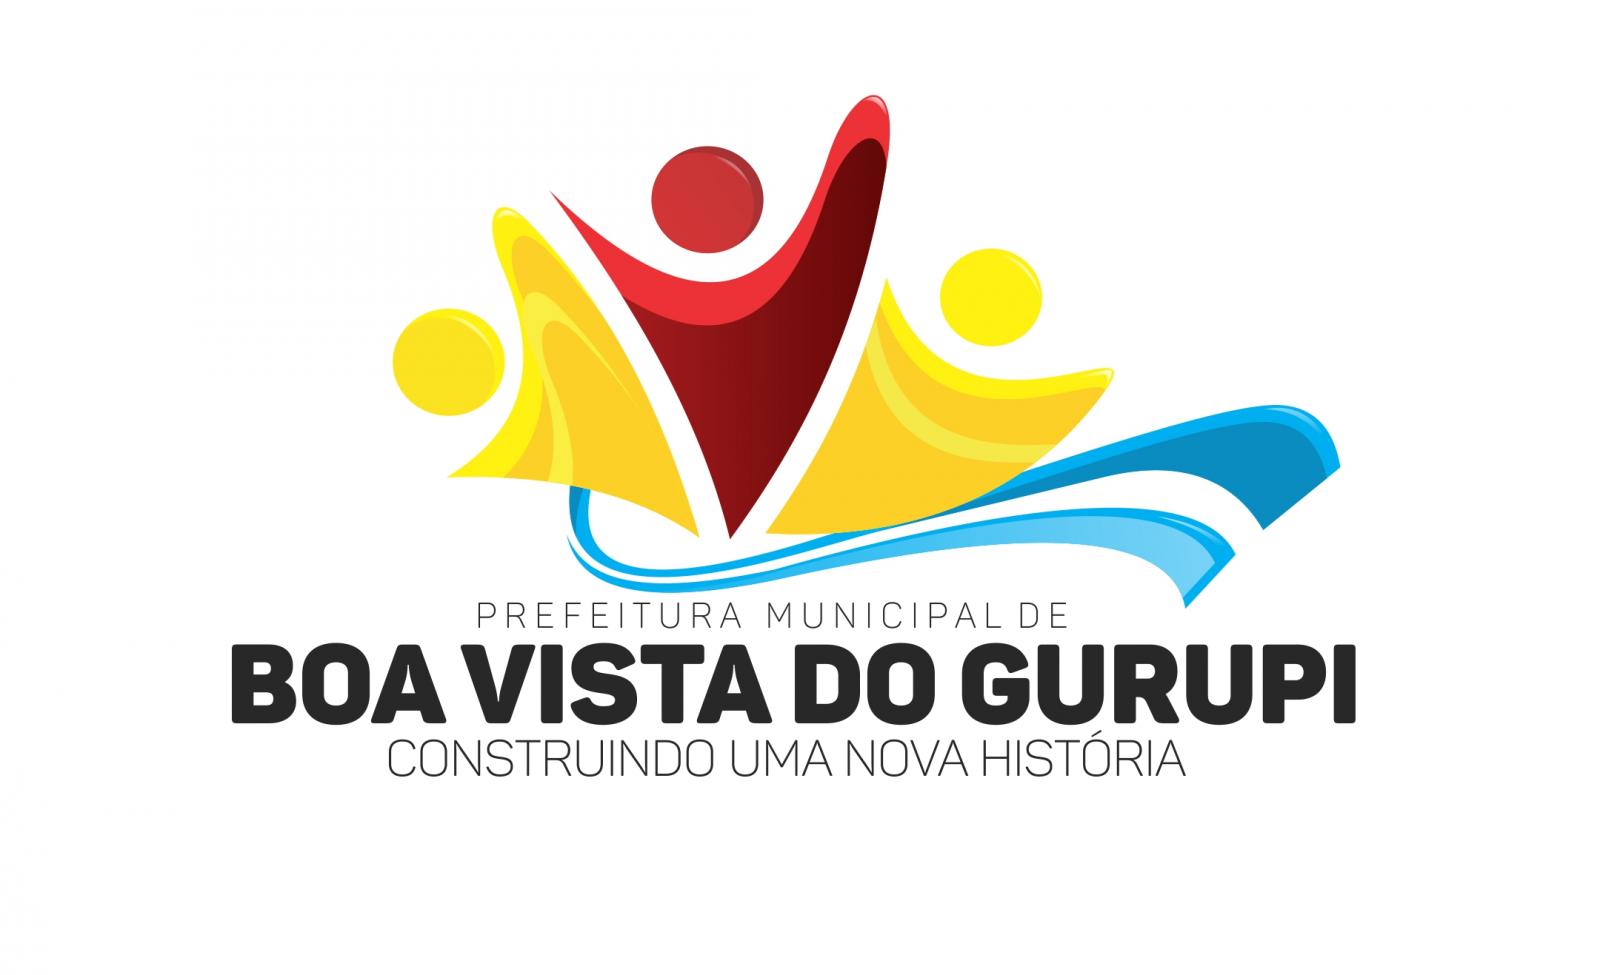 Plano Municipal de Saneamento Básico de Boa Vista do Gurupi está disponível para consulta pública